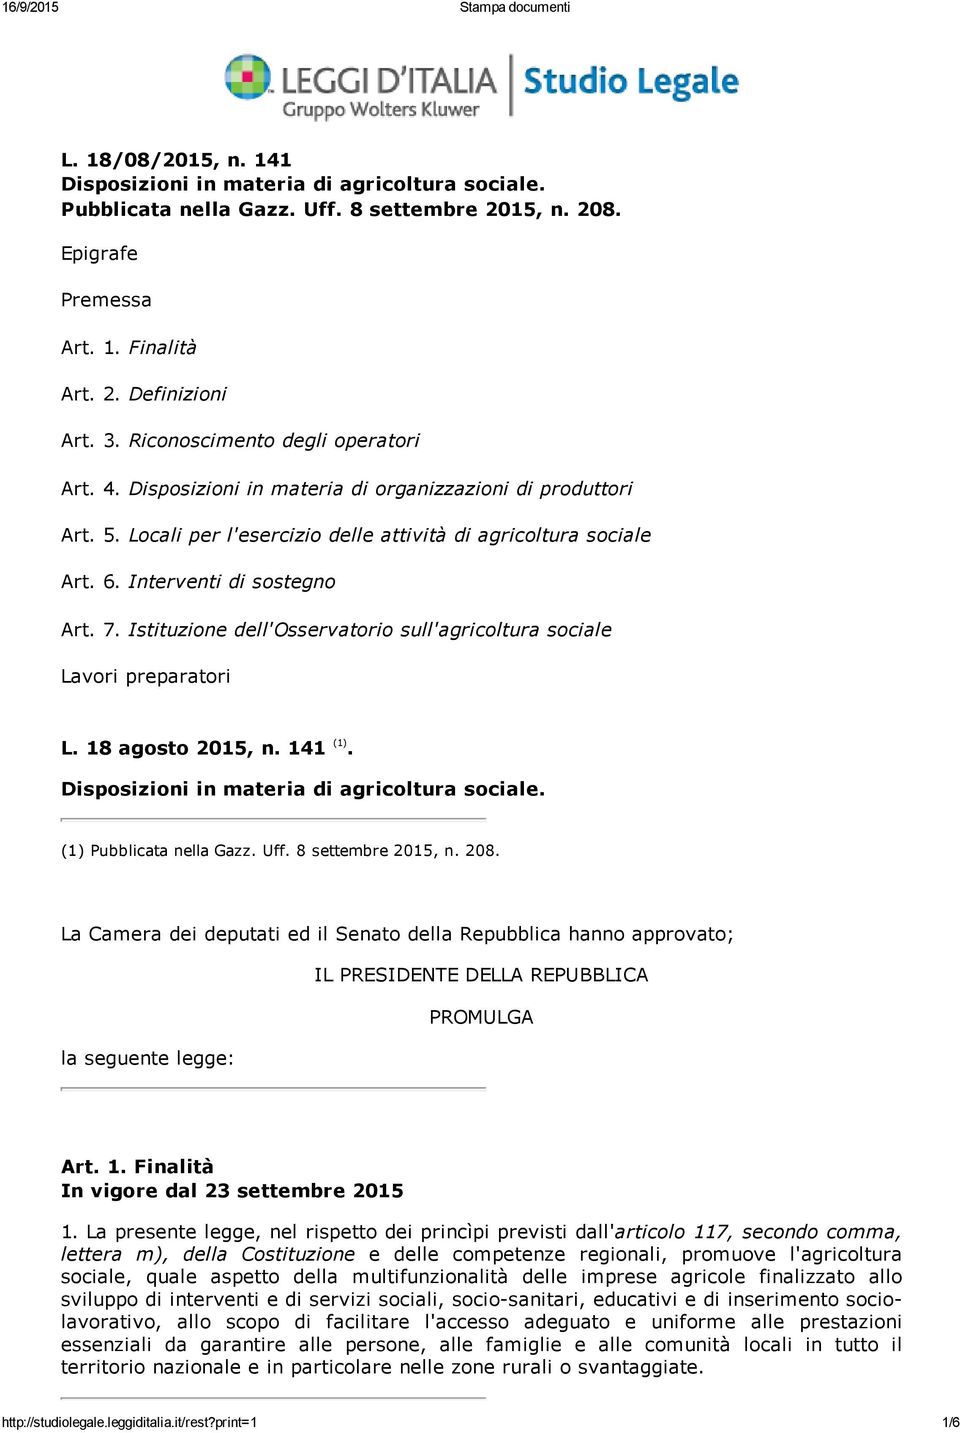 7. Istituzione dell'osservatorio sull'agricoltura sociale Lavori preparatori L. 18 agosto 2015, n. 141 (1). Disposizioni in materia di agricoltura sociale. (1) Pubblicata nella Gazz. Uff.